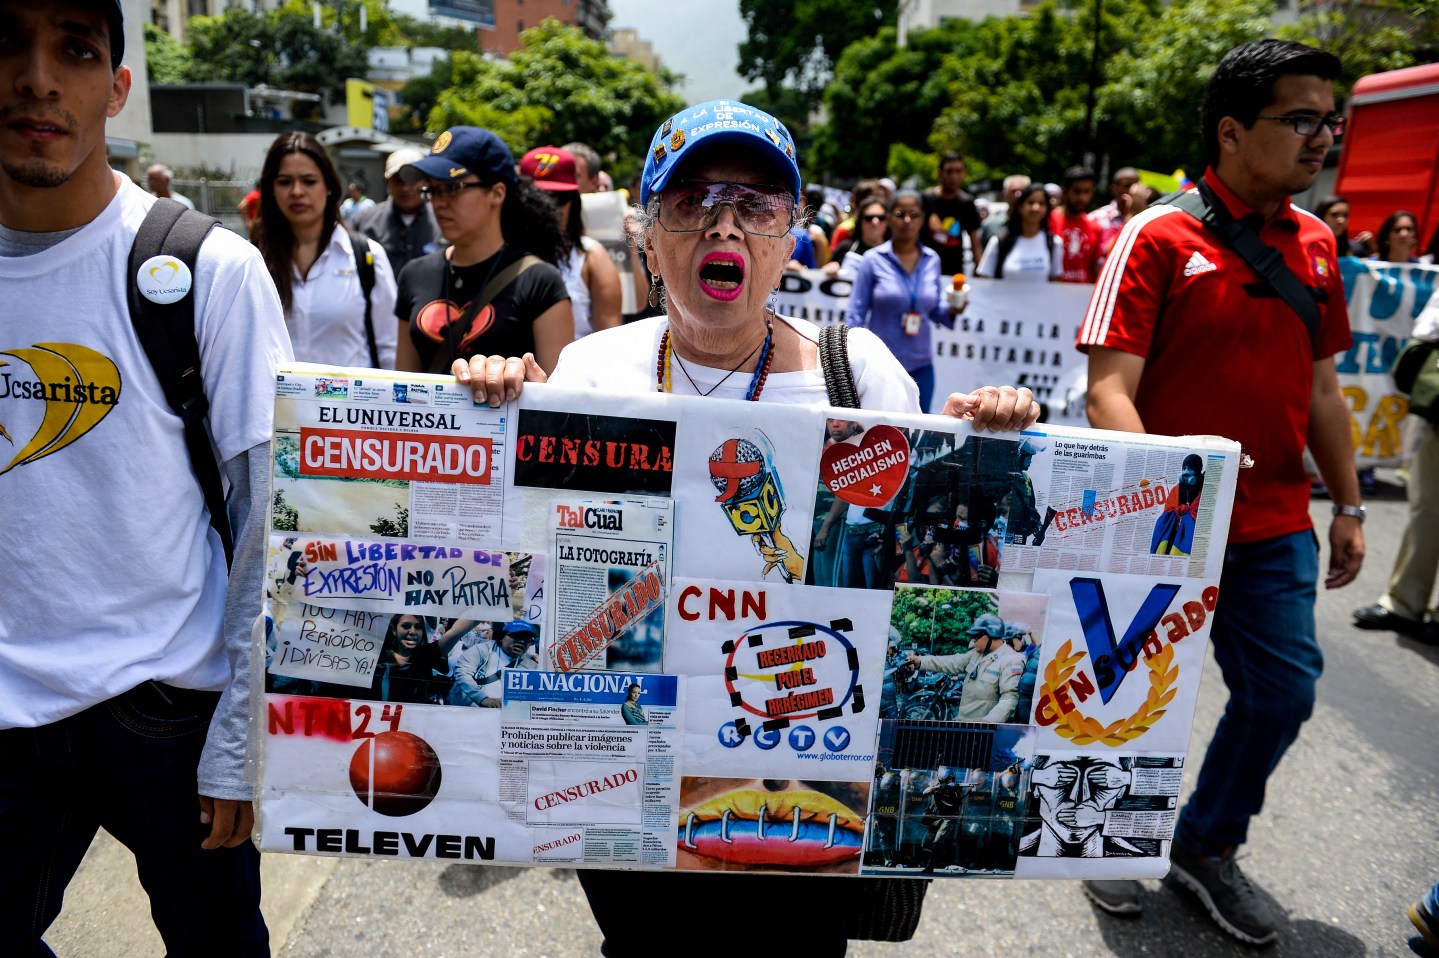 Sntp: La libertad de prensa en Venezuela, bajo ataque y persecución